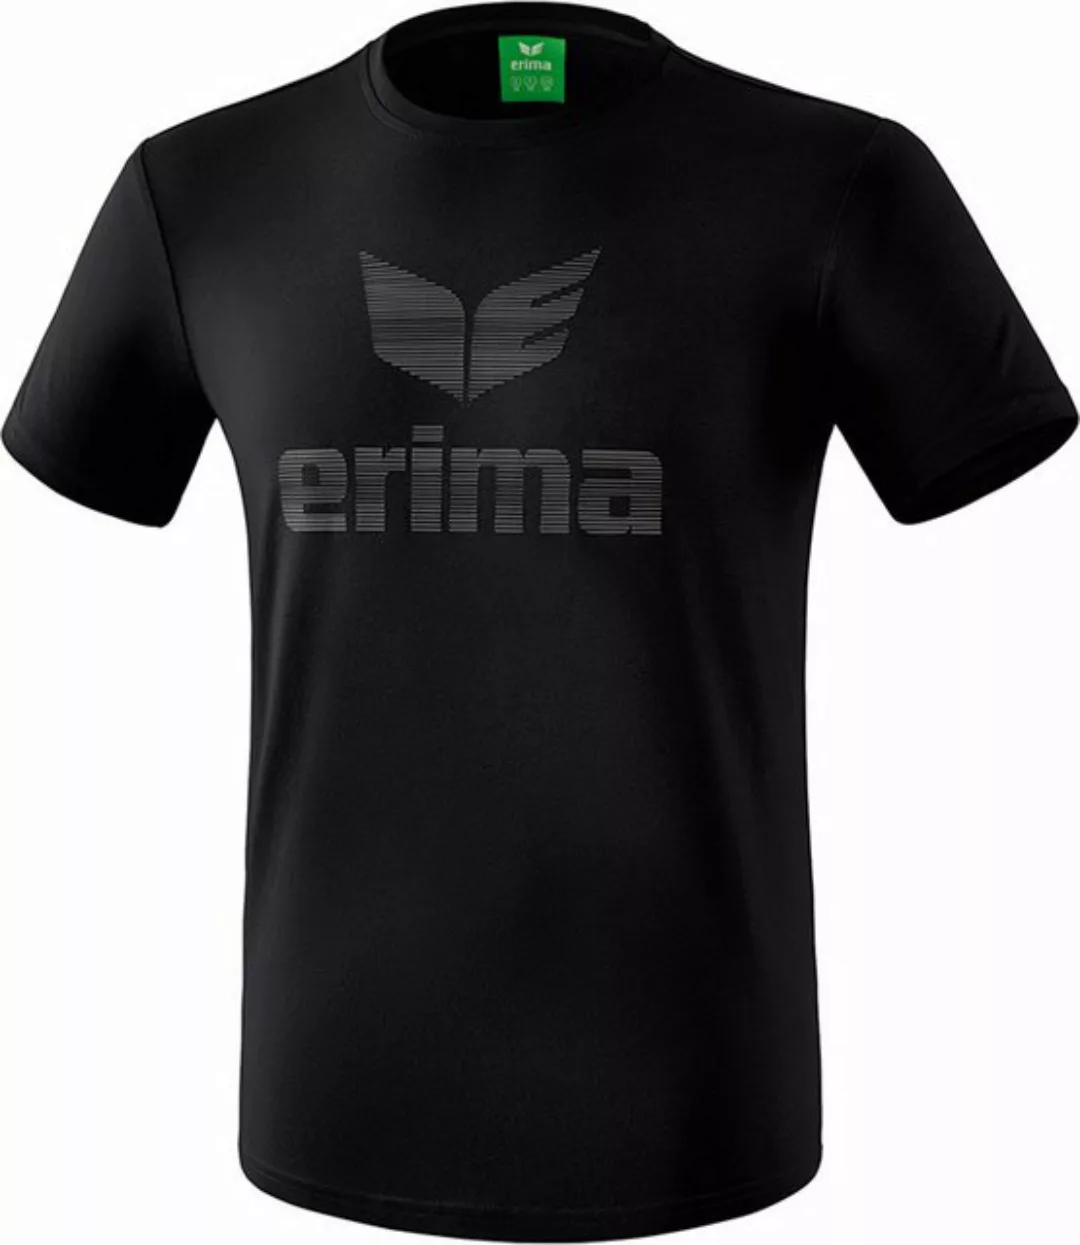 Erima T-Shirt Essential T-Shirt Damen günstig online kaufen